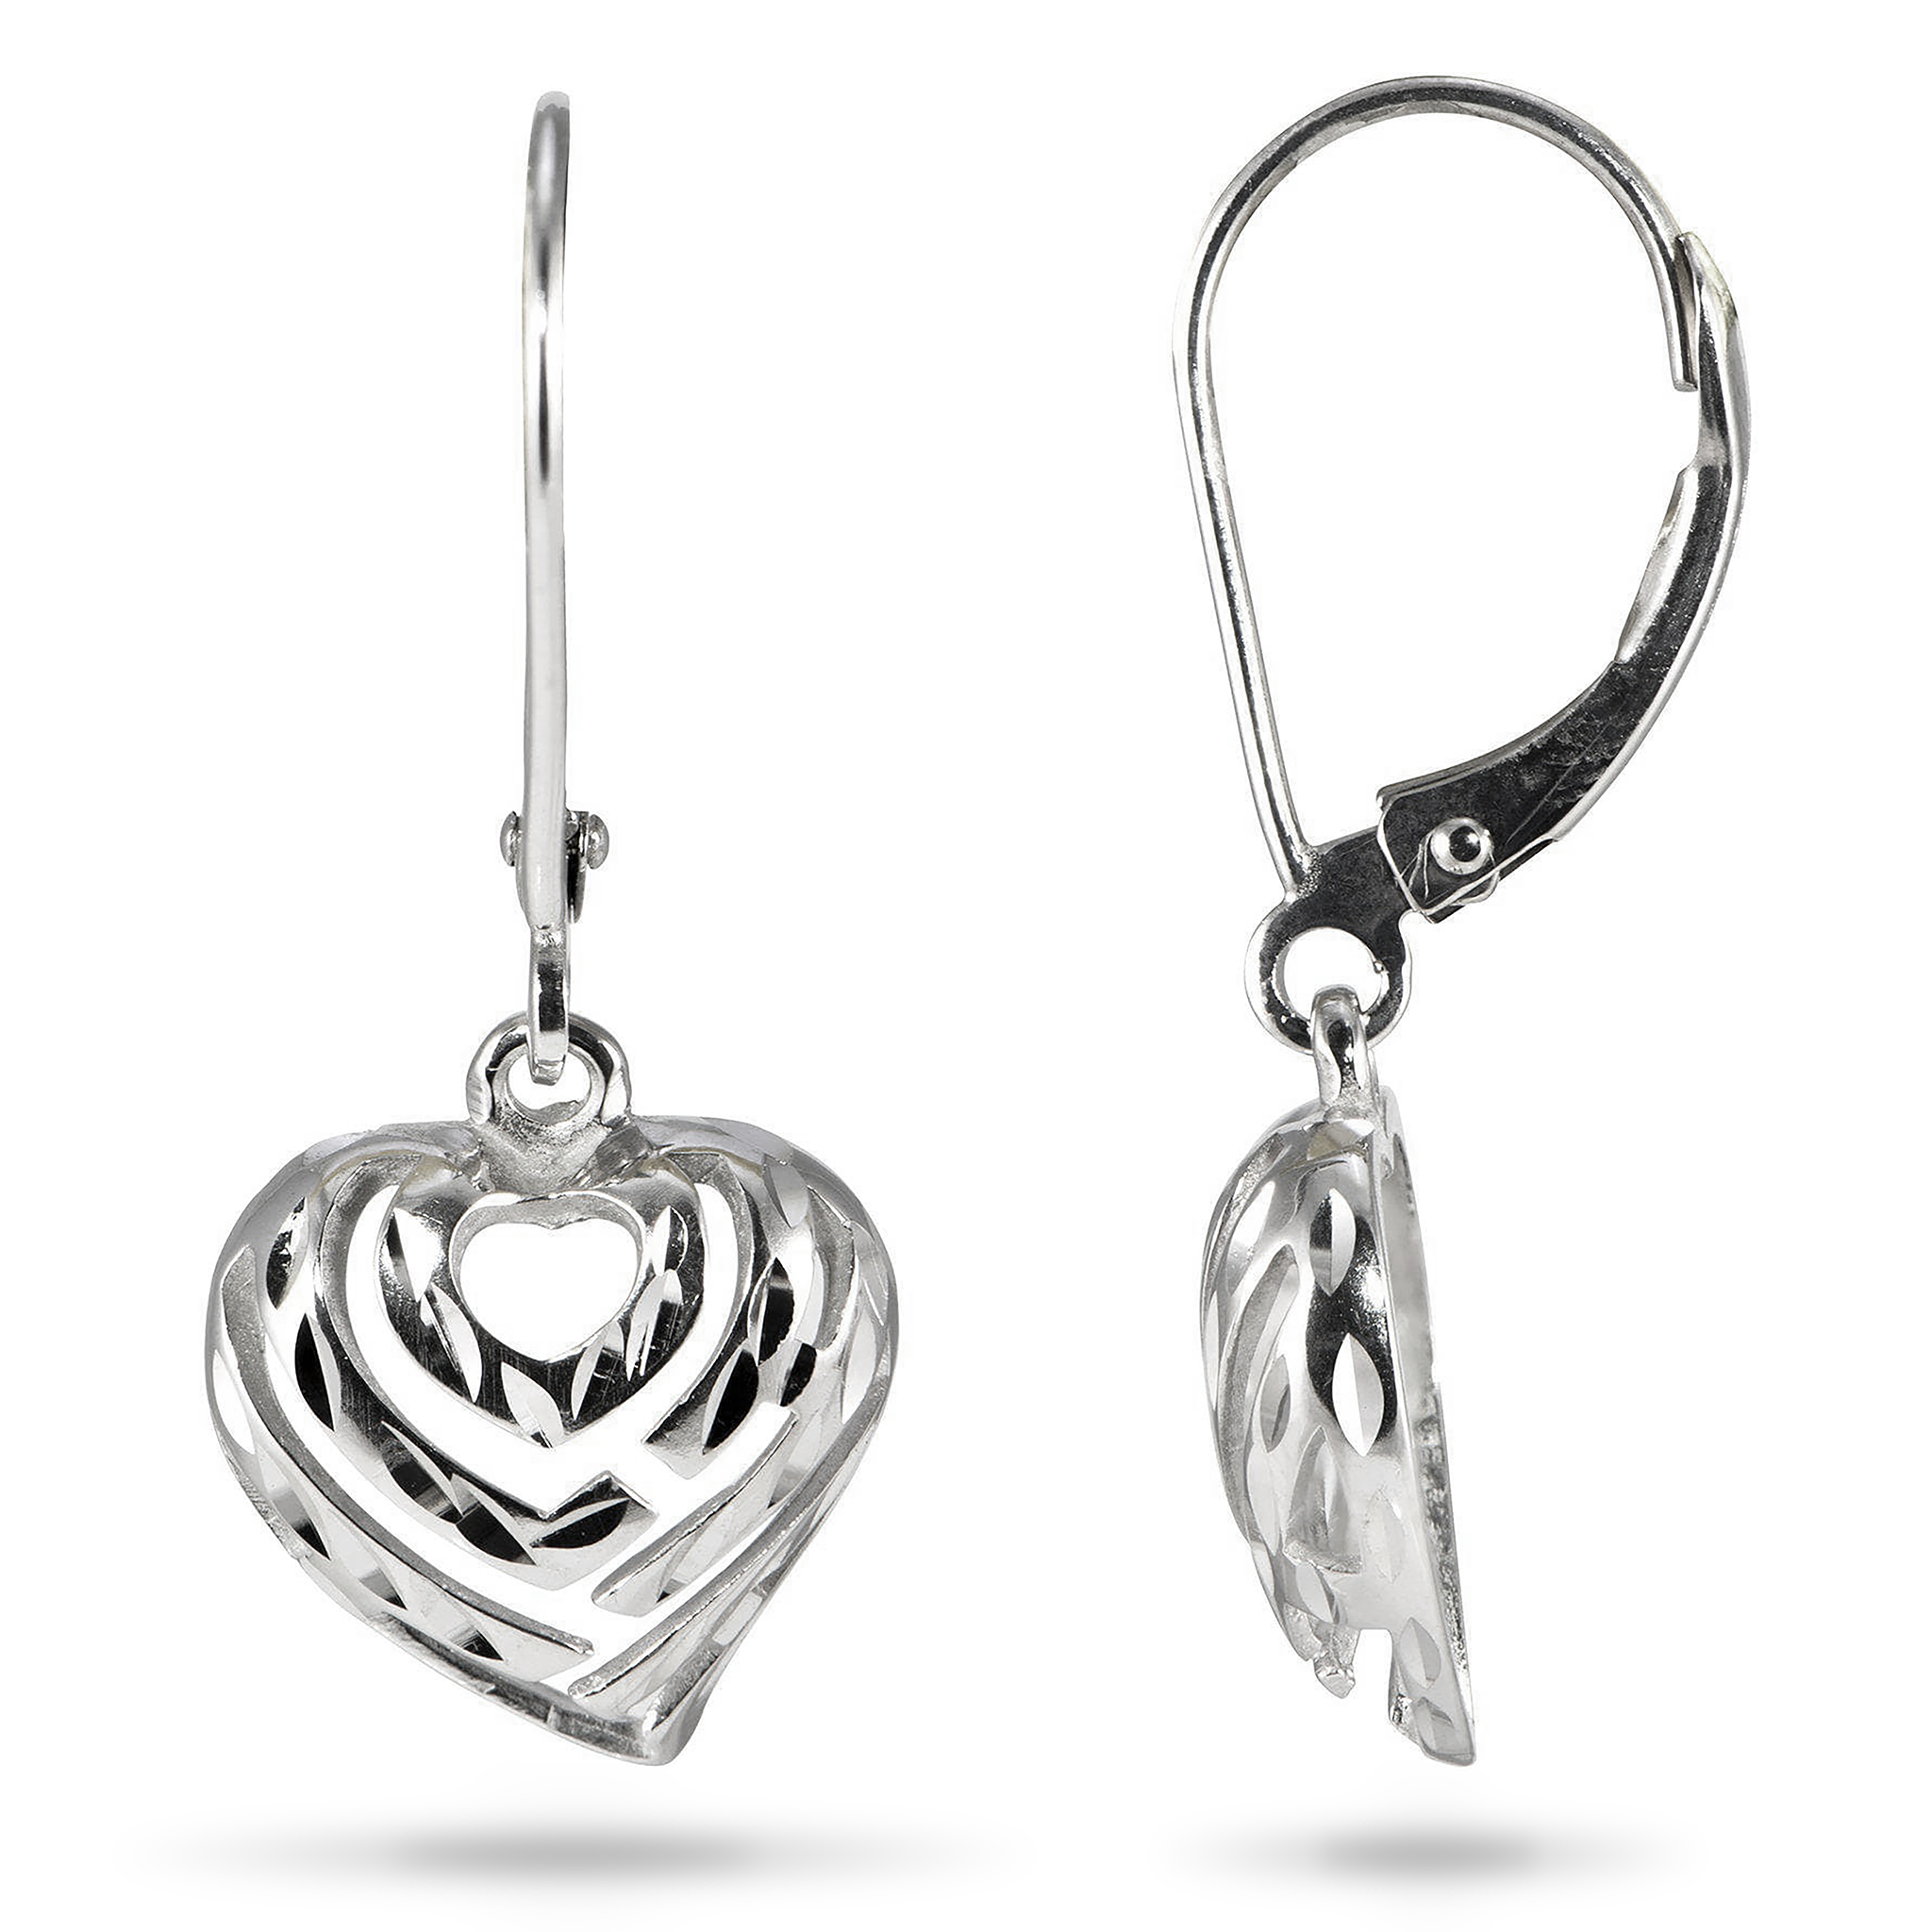 Aloha Heart Earrings in Sterling Silver - 18mm